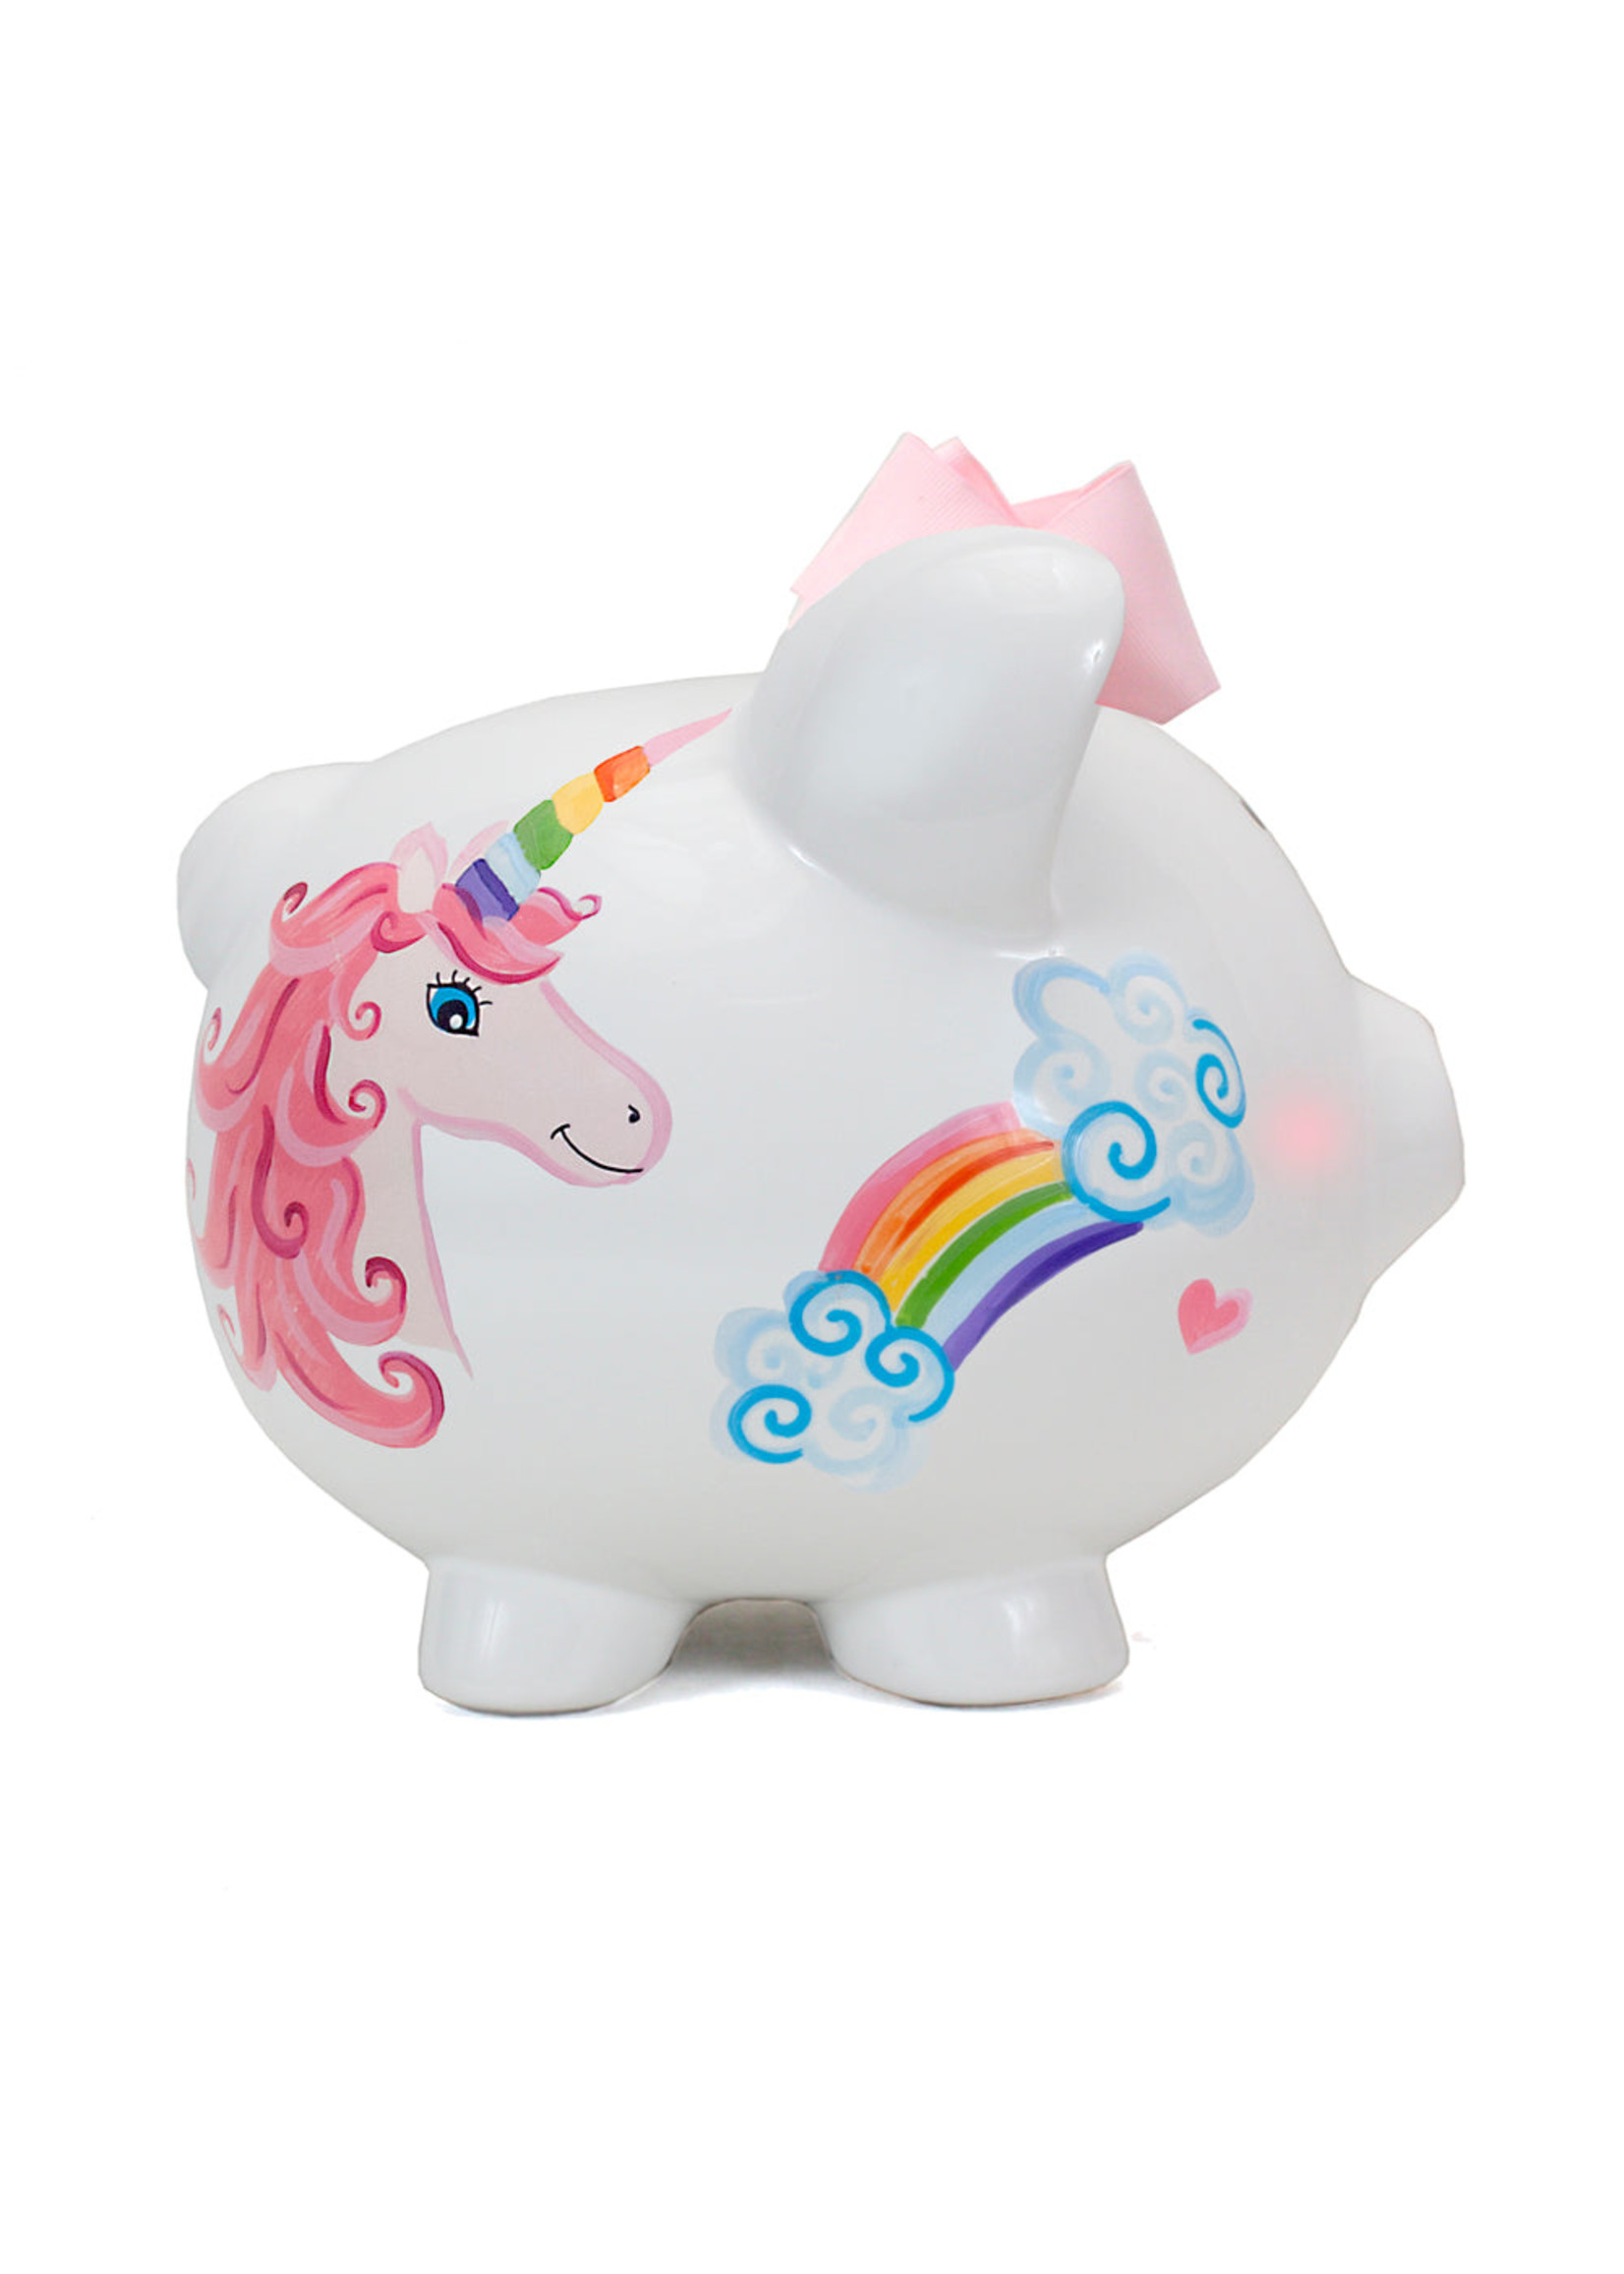 Child to Cherish Child to Cherish Unicorns & Rainbows Piggy Bank